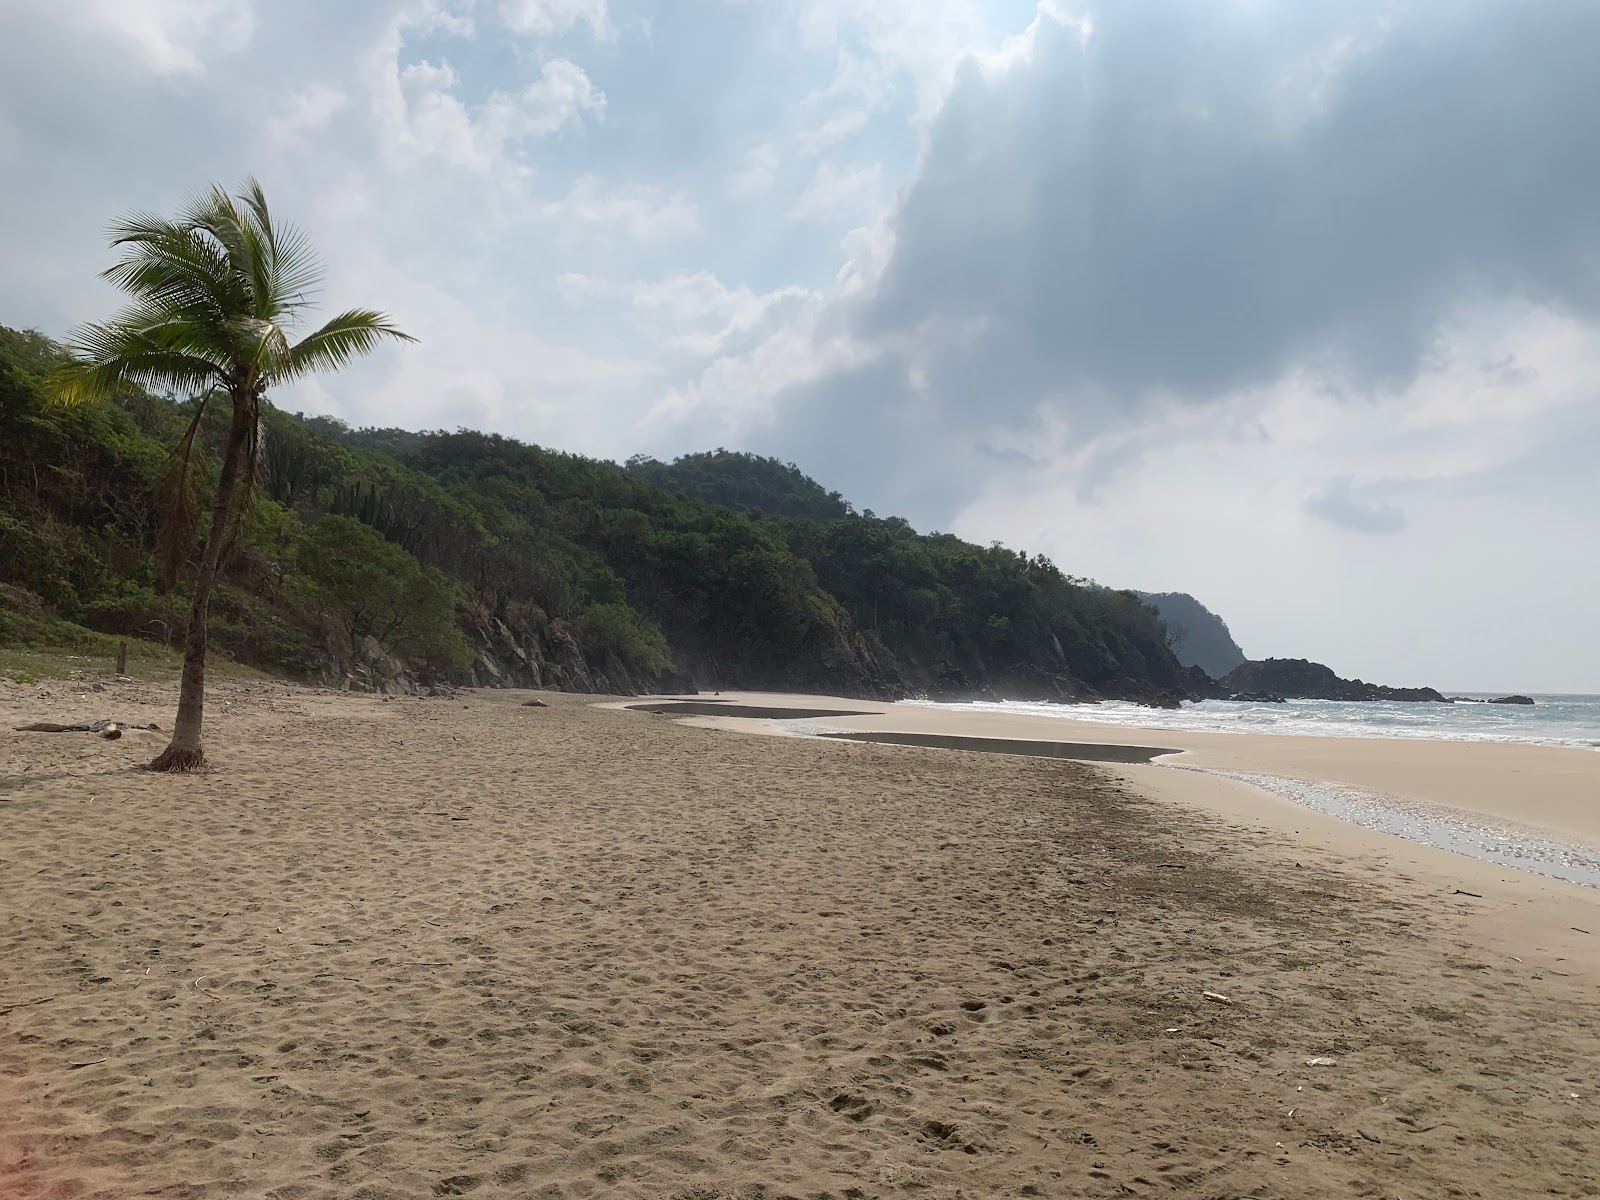 Playa Majahua Zihuatanejo'in fotoğrafı geniş ile birlikte